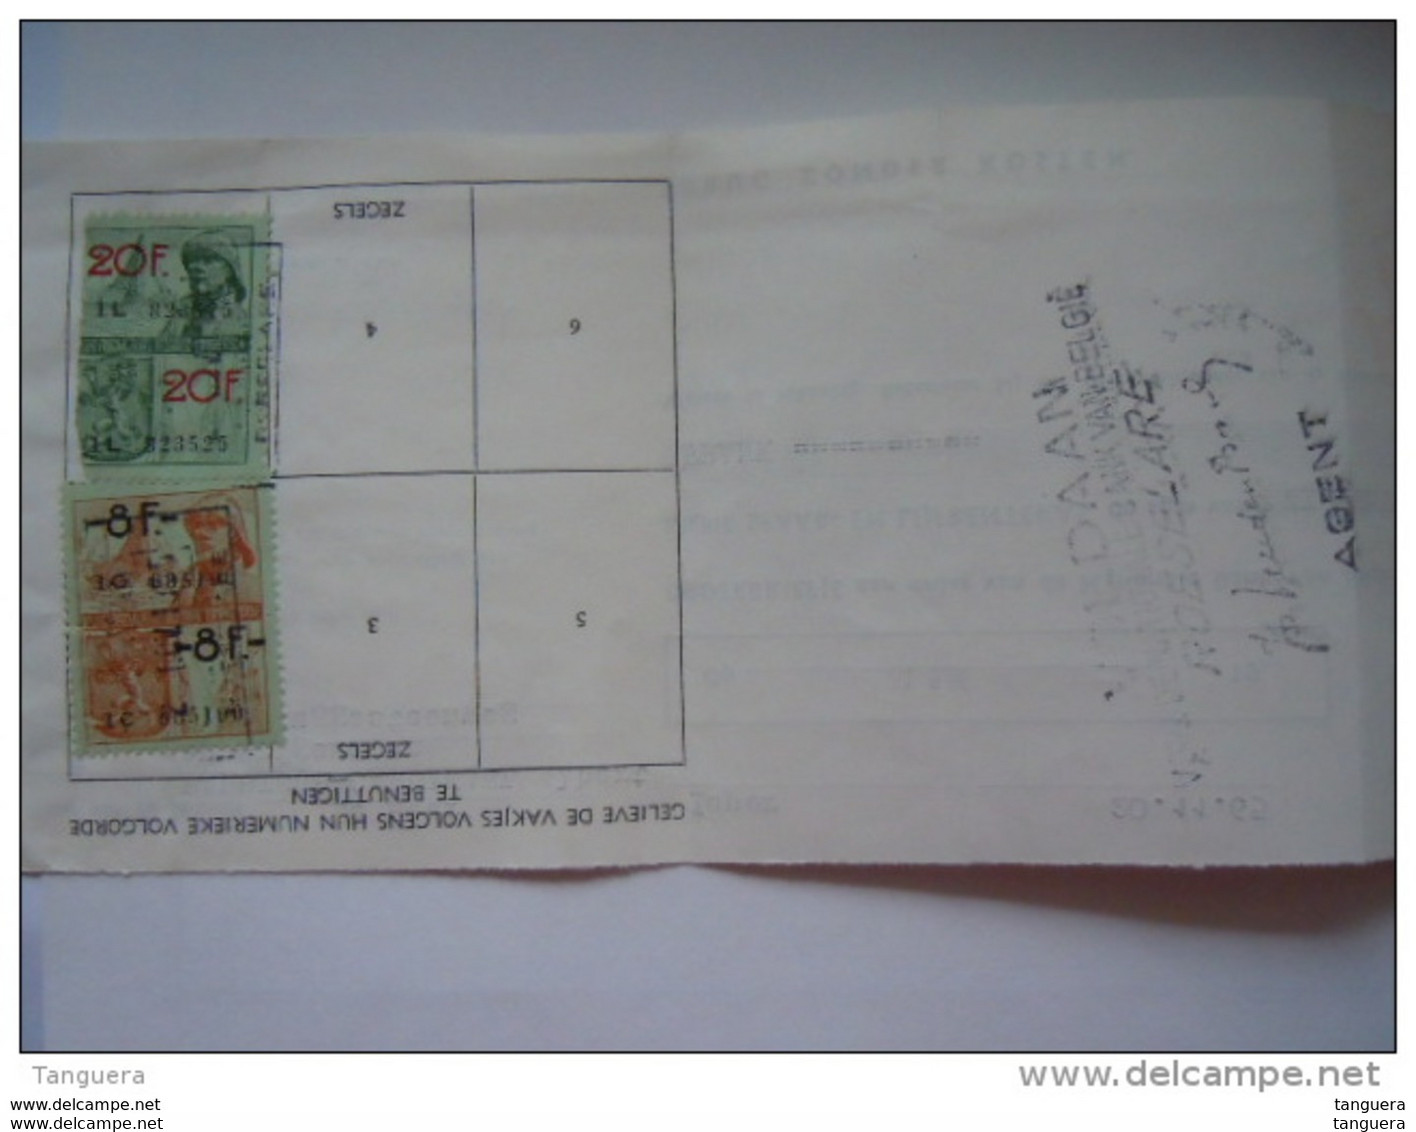 1965 Fiscal 541 8 + 545 20 F Sur Lettre De Change Wisselbrief Ieper Roeselare - Documentos